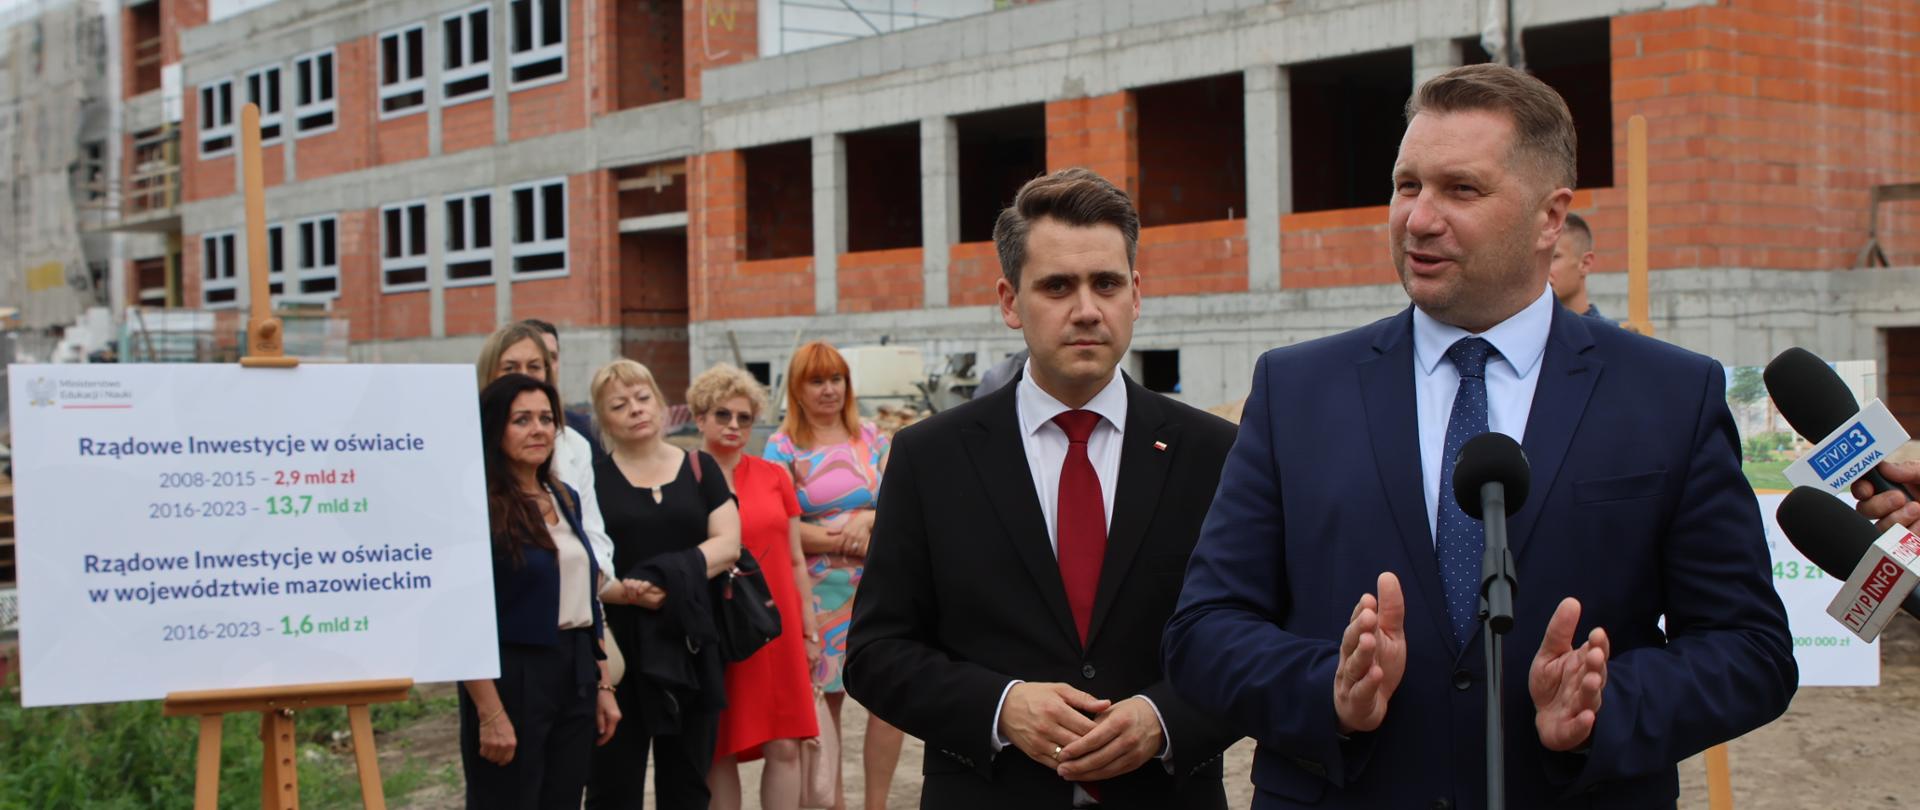 Minister Czarnek stoi przy mikrofonie, za nim mężczyzna w garniturze. W tle widać budynek w trakcie budowy i grupę kobiet.